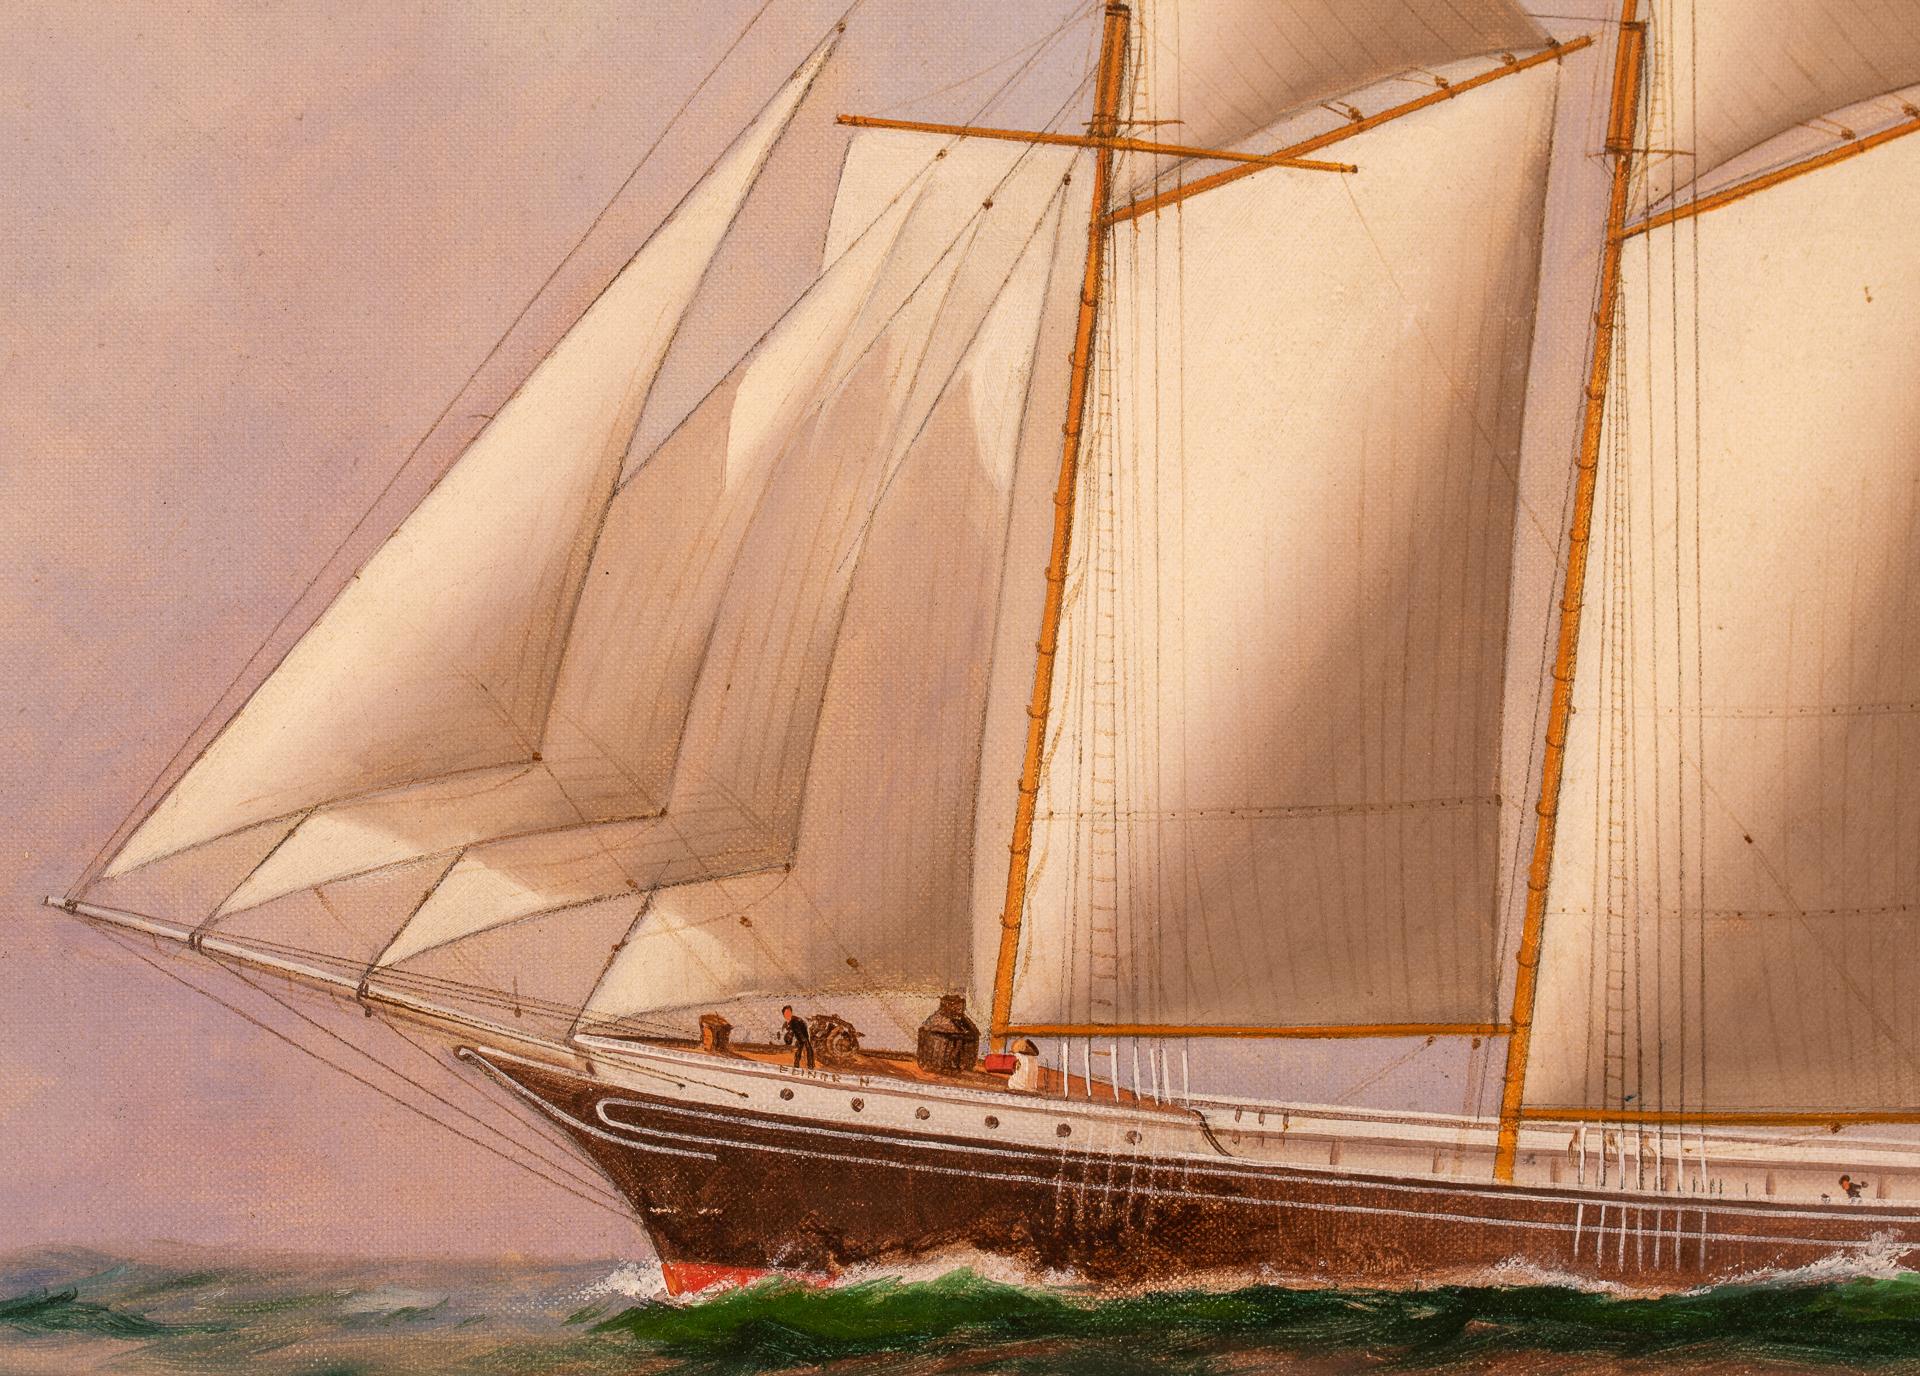 Ce portrait attrayant représente la goélette à cinq mâts ELINOR H. à pleine voile dans une mer active. Le navire présente des lignes nettes et un sens aigu du détail, probablement parce qu'il a été peint à partir d'une observation directe ou d'une